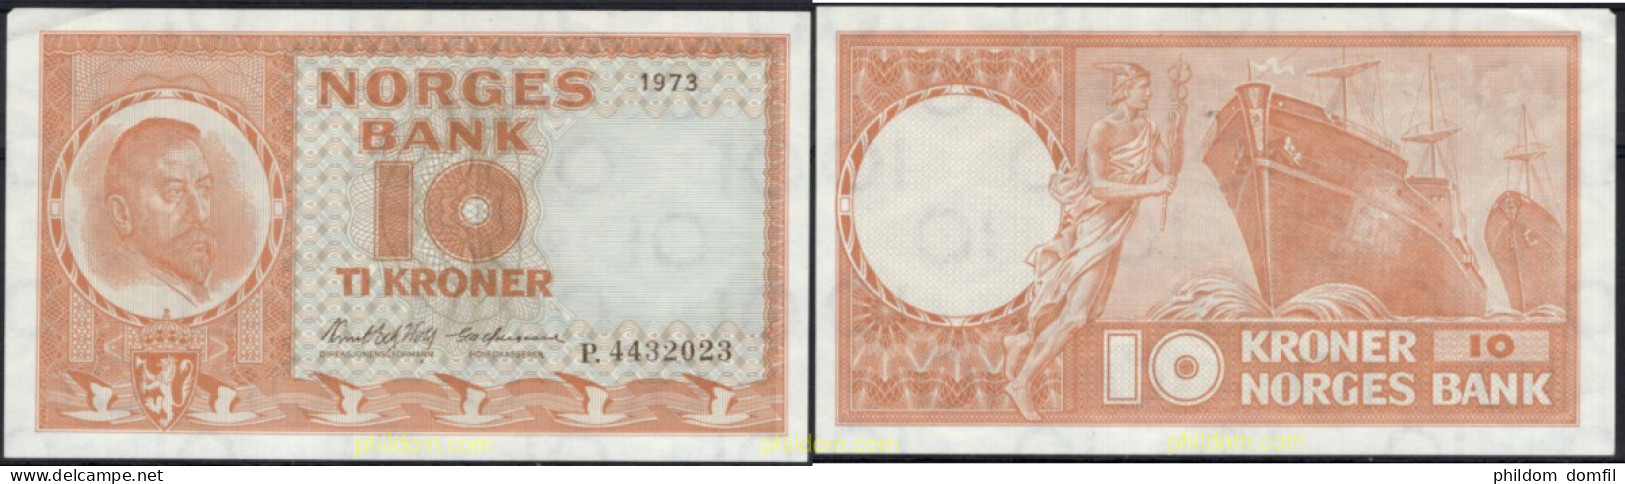 8536 NORUEGA 1973 NORWAY NORGES BANK 1973 10 KRONER - Norvège